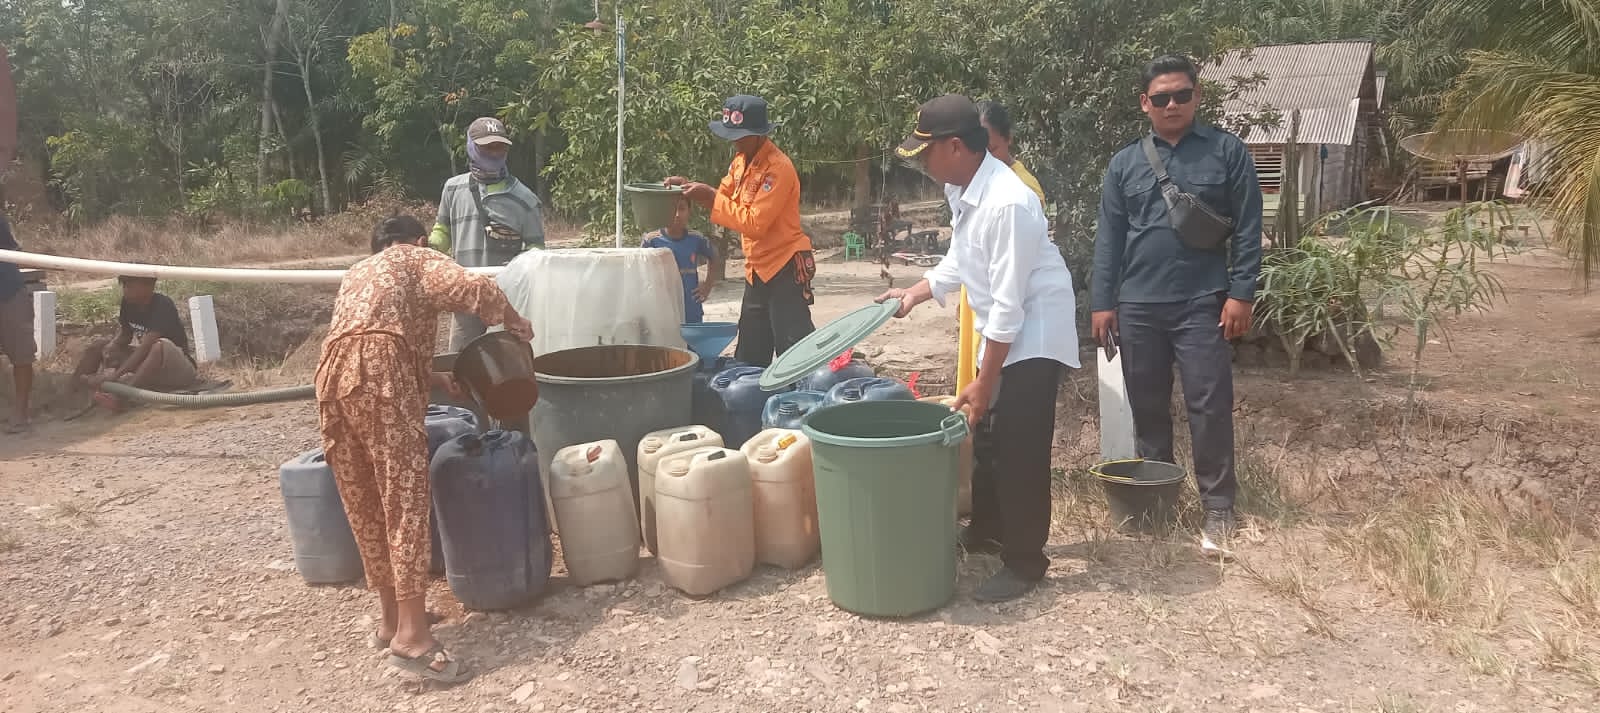 Mesuji Kemarau Parah, Ribuan Liter Air Bersih Didistribusikan ke Masyarakat